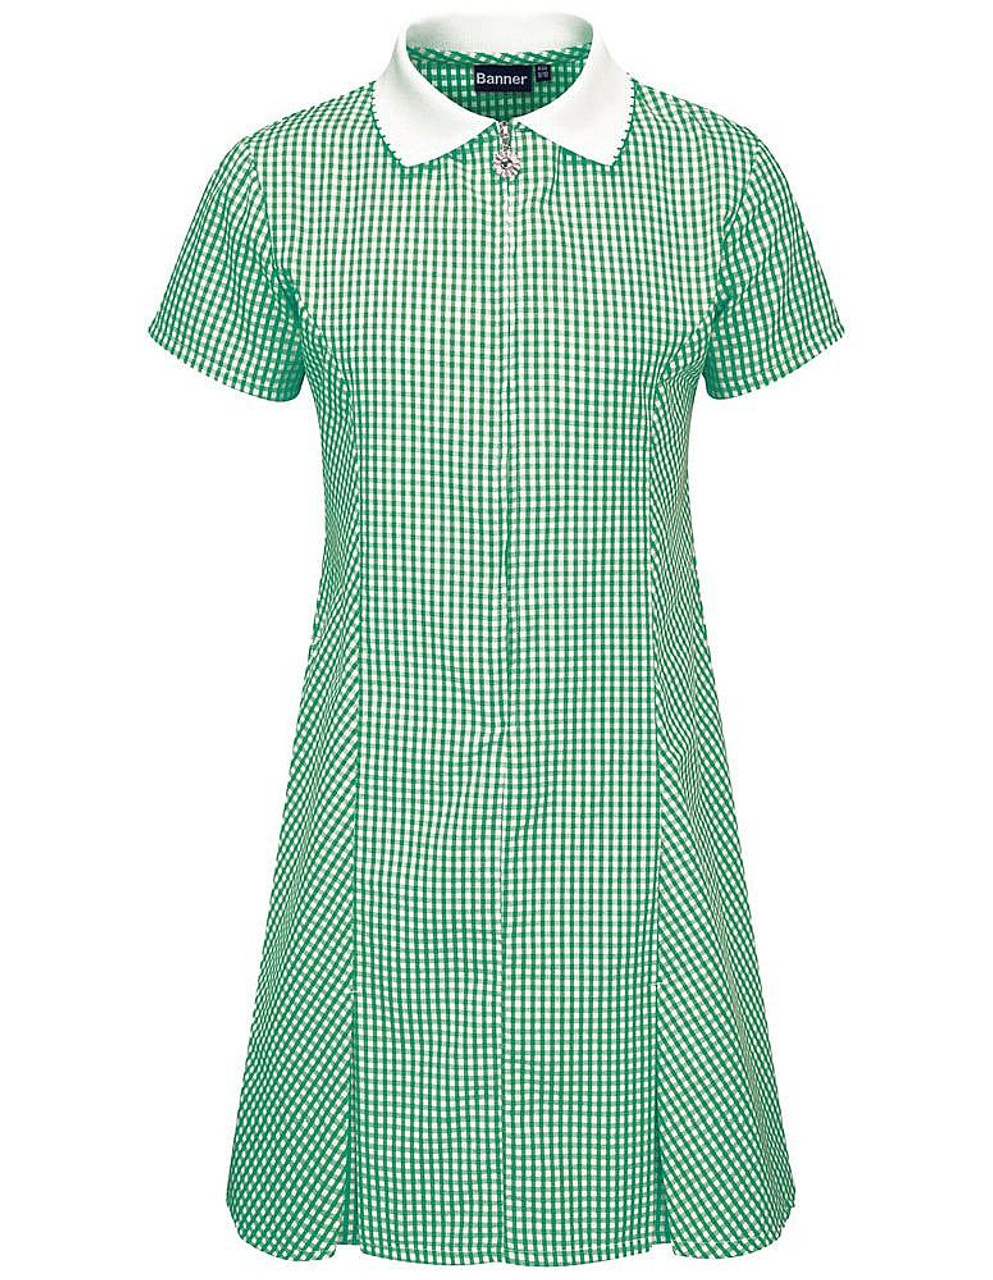 green gingham summer dress